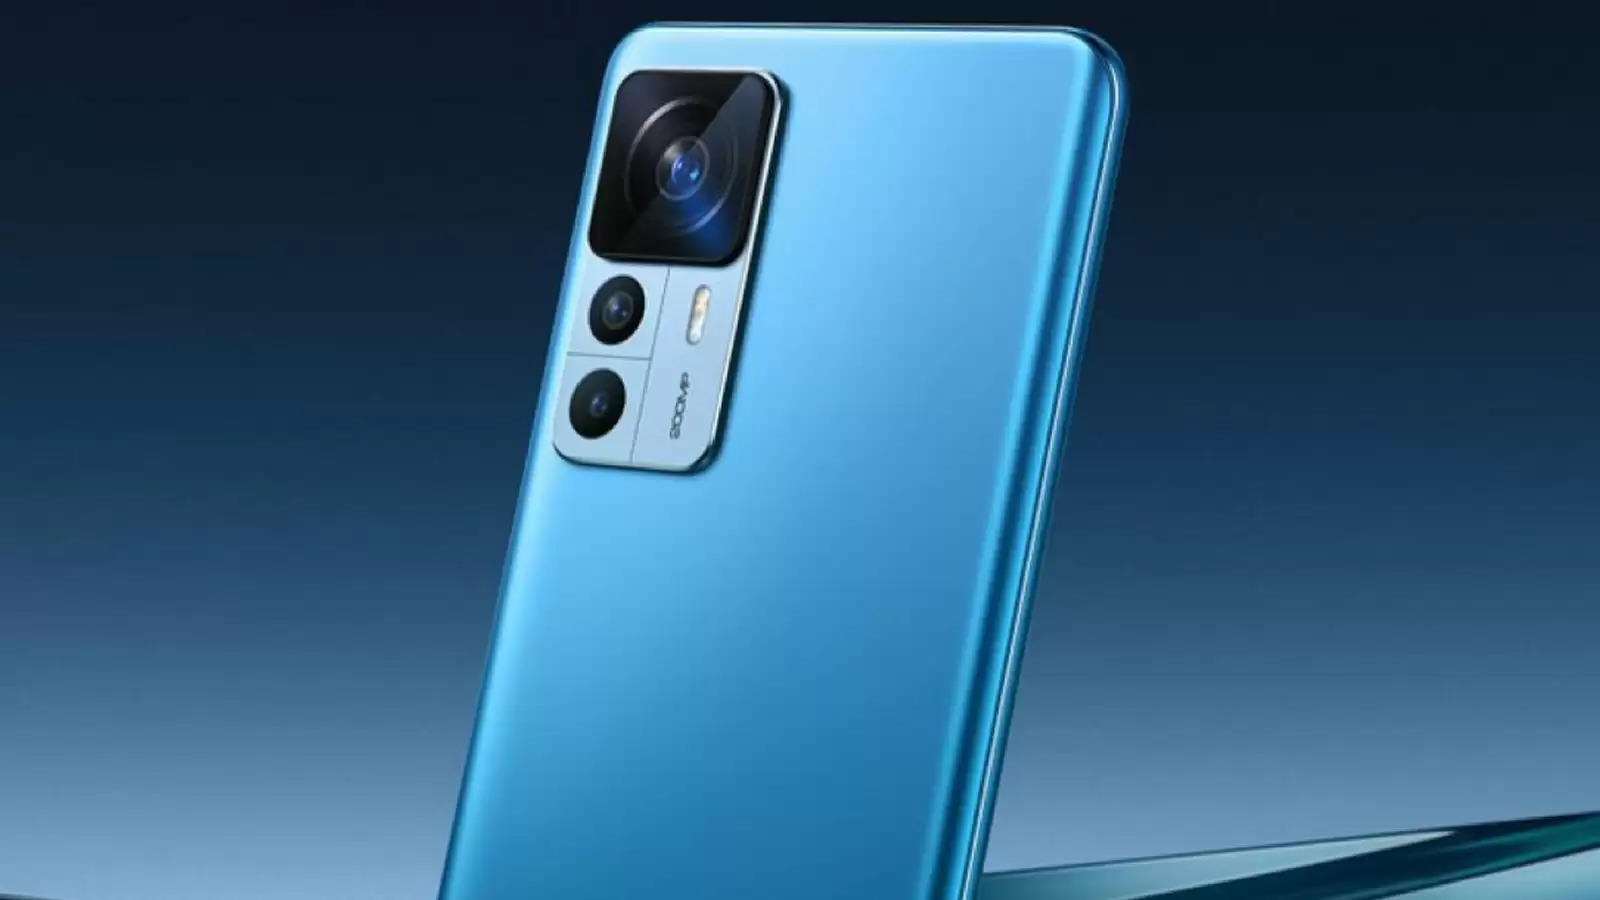 Xiaomi के इस नए फोन में मिलेगा धांसू कैमरा, फास्ट चार्जिंग के लिए मिलेगा 120W तक का सपोर्ट  